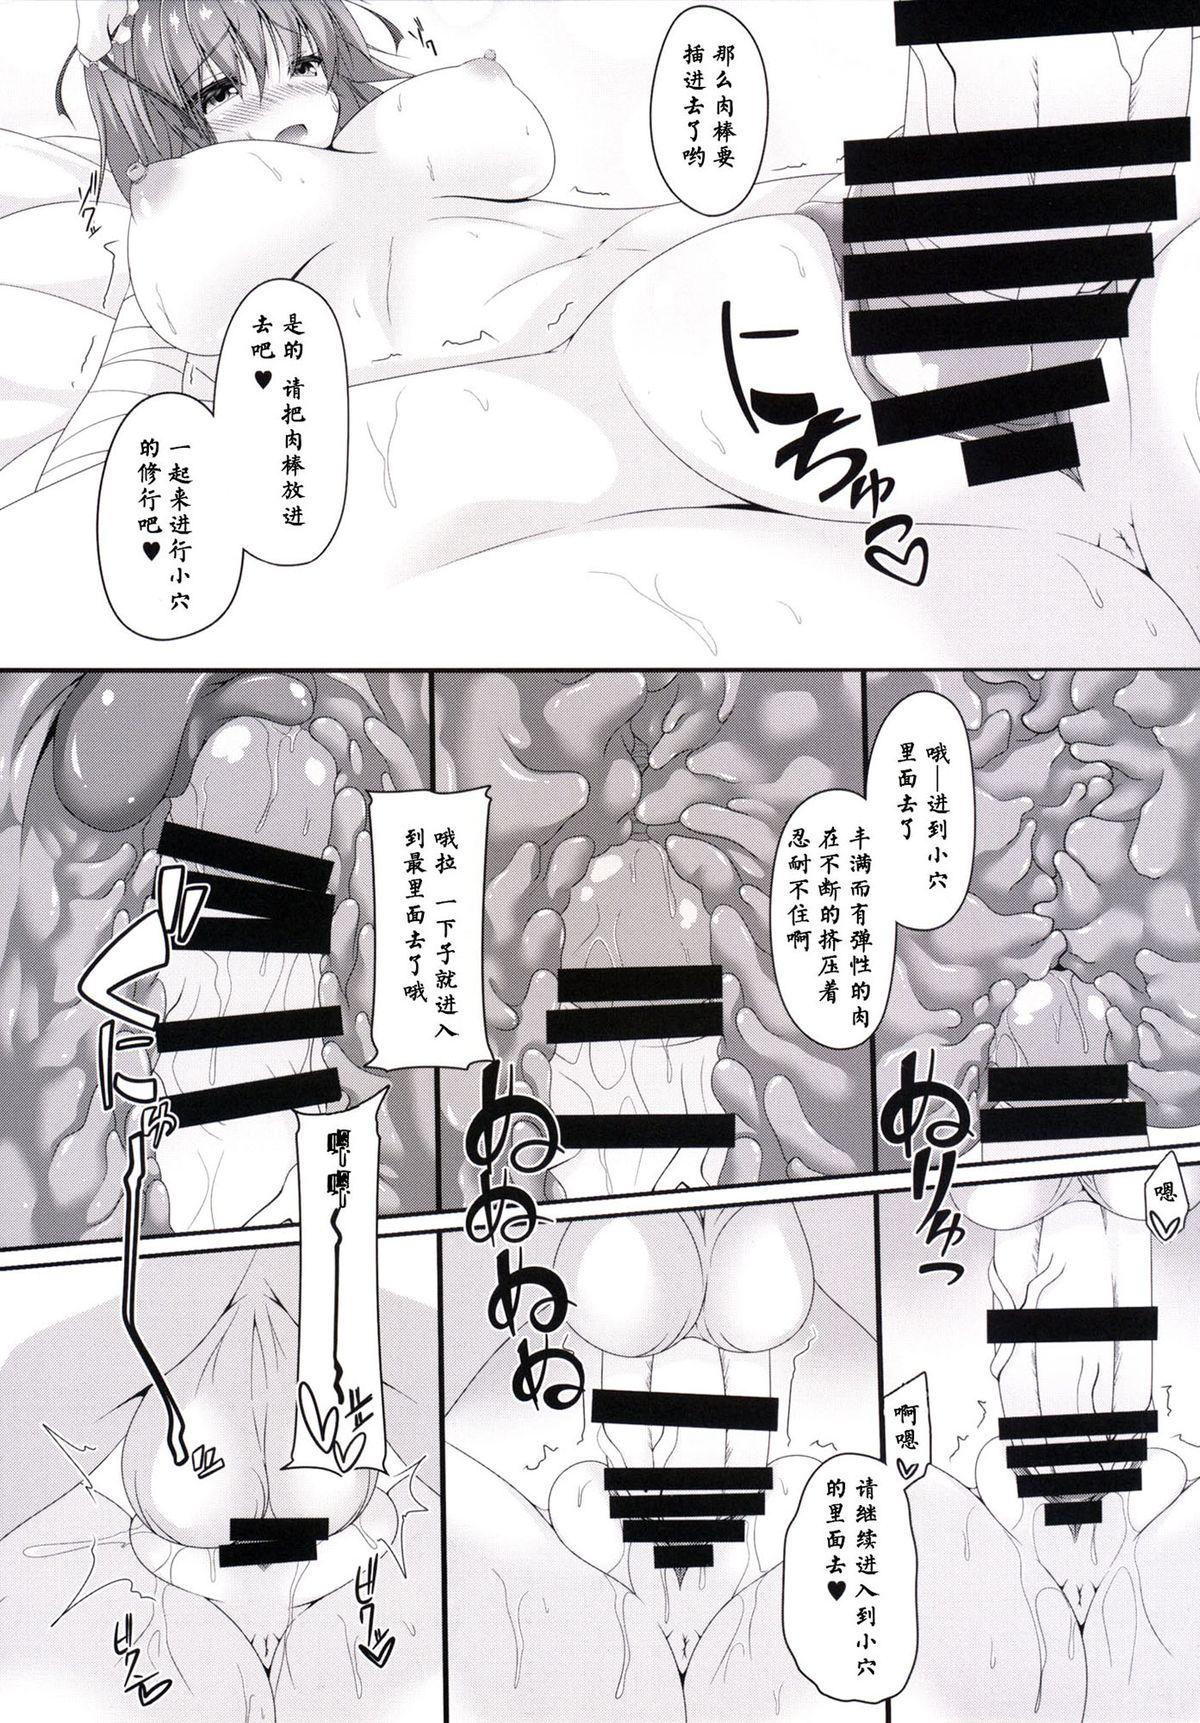 Momoiro Senjutsu 7